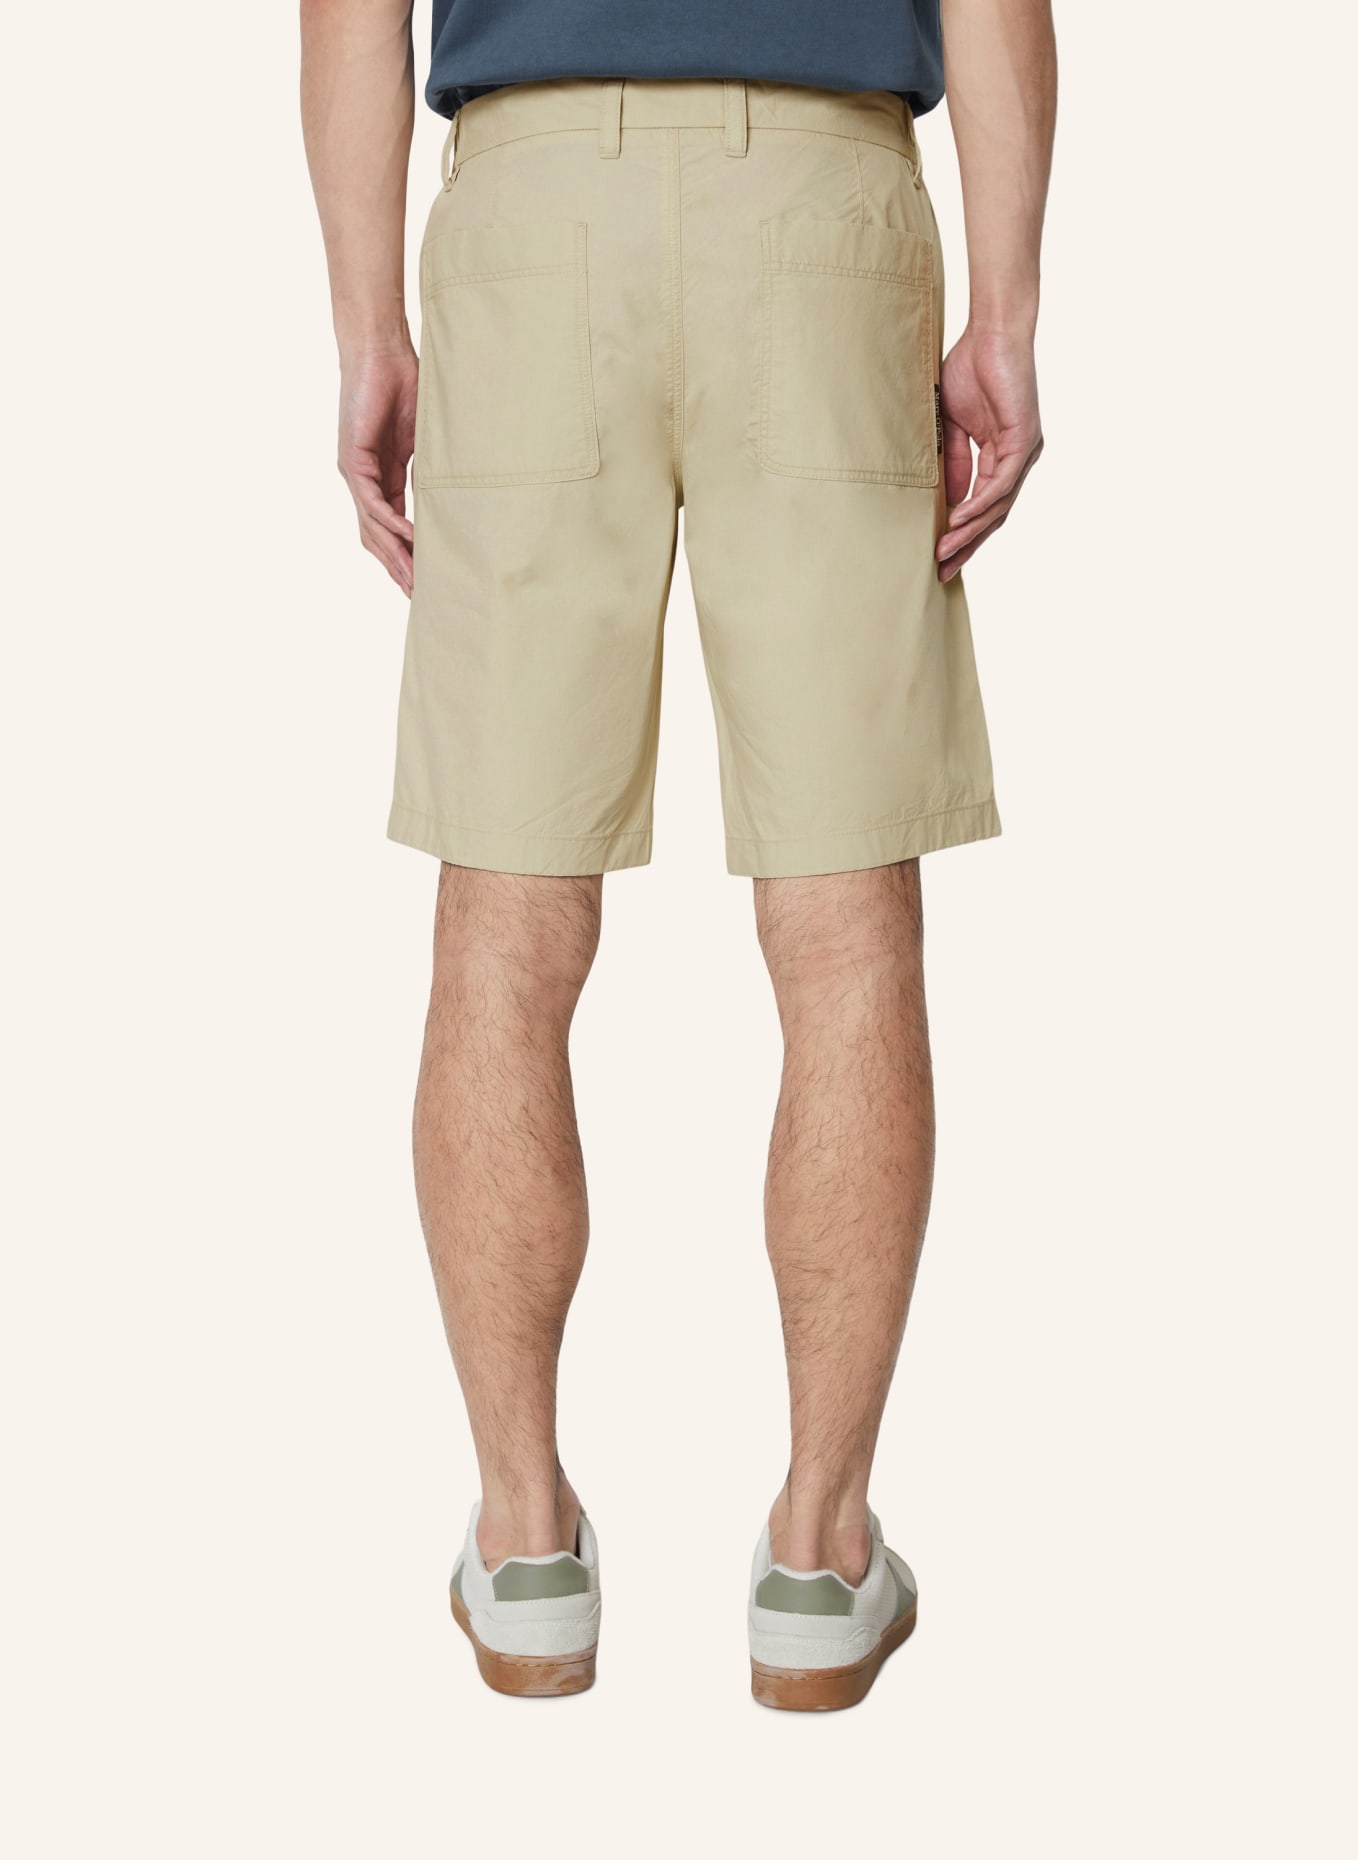 Marc O'Polo Shorts Modell RESO, Farbe: BEIGE (Bild 2)